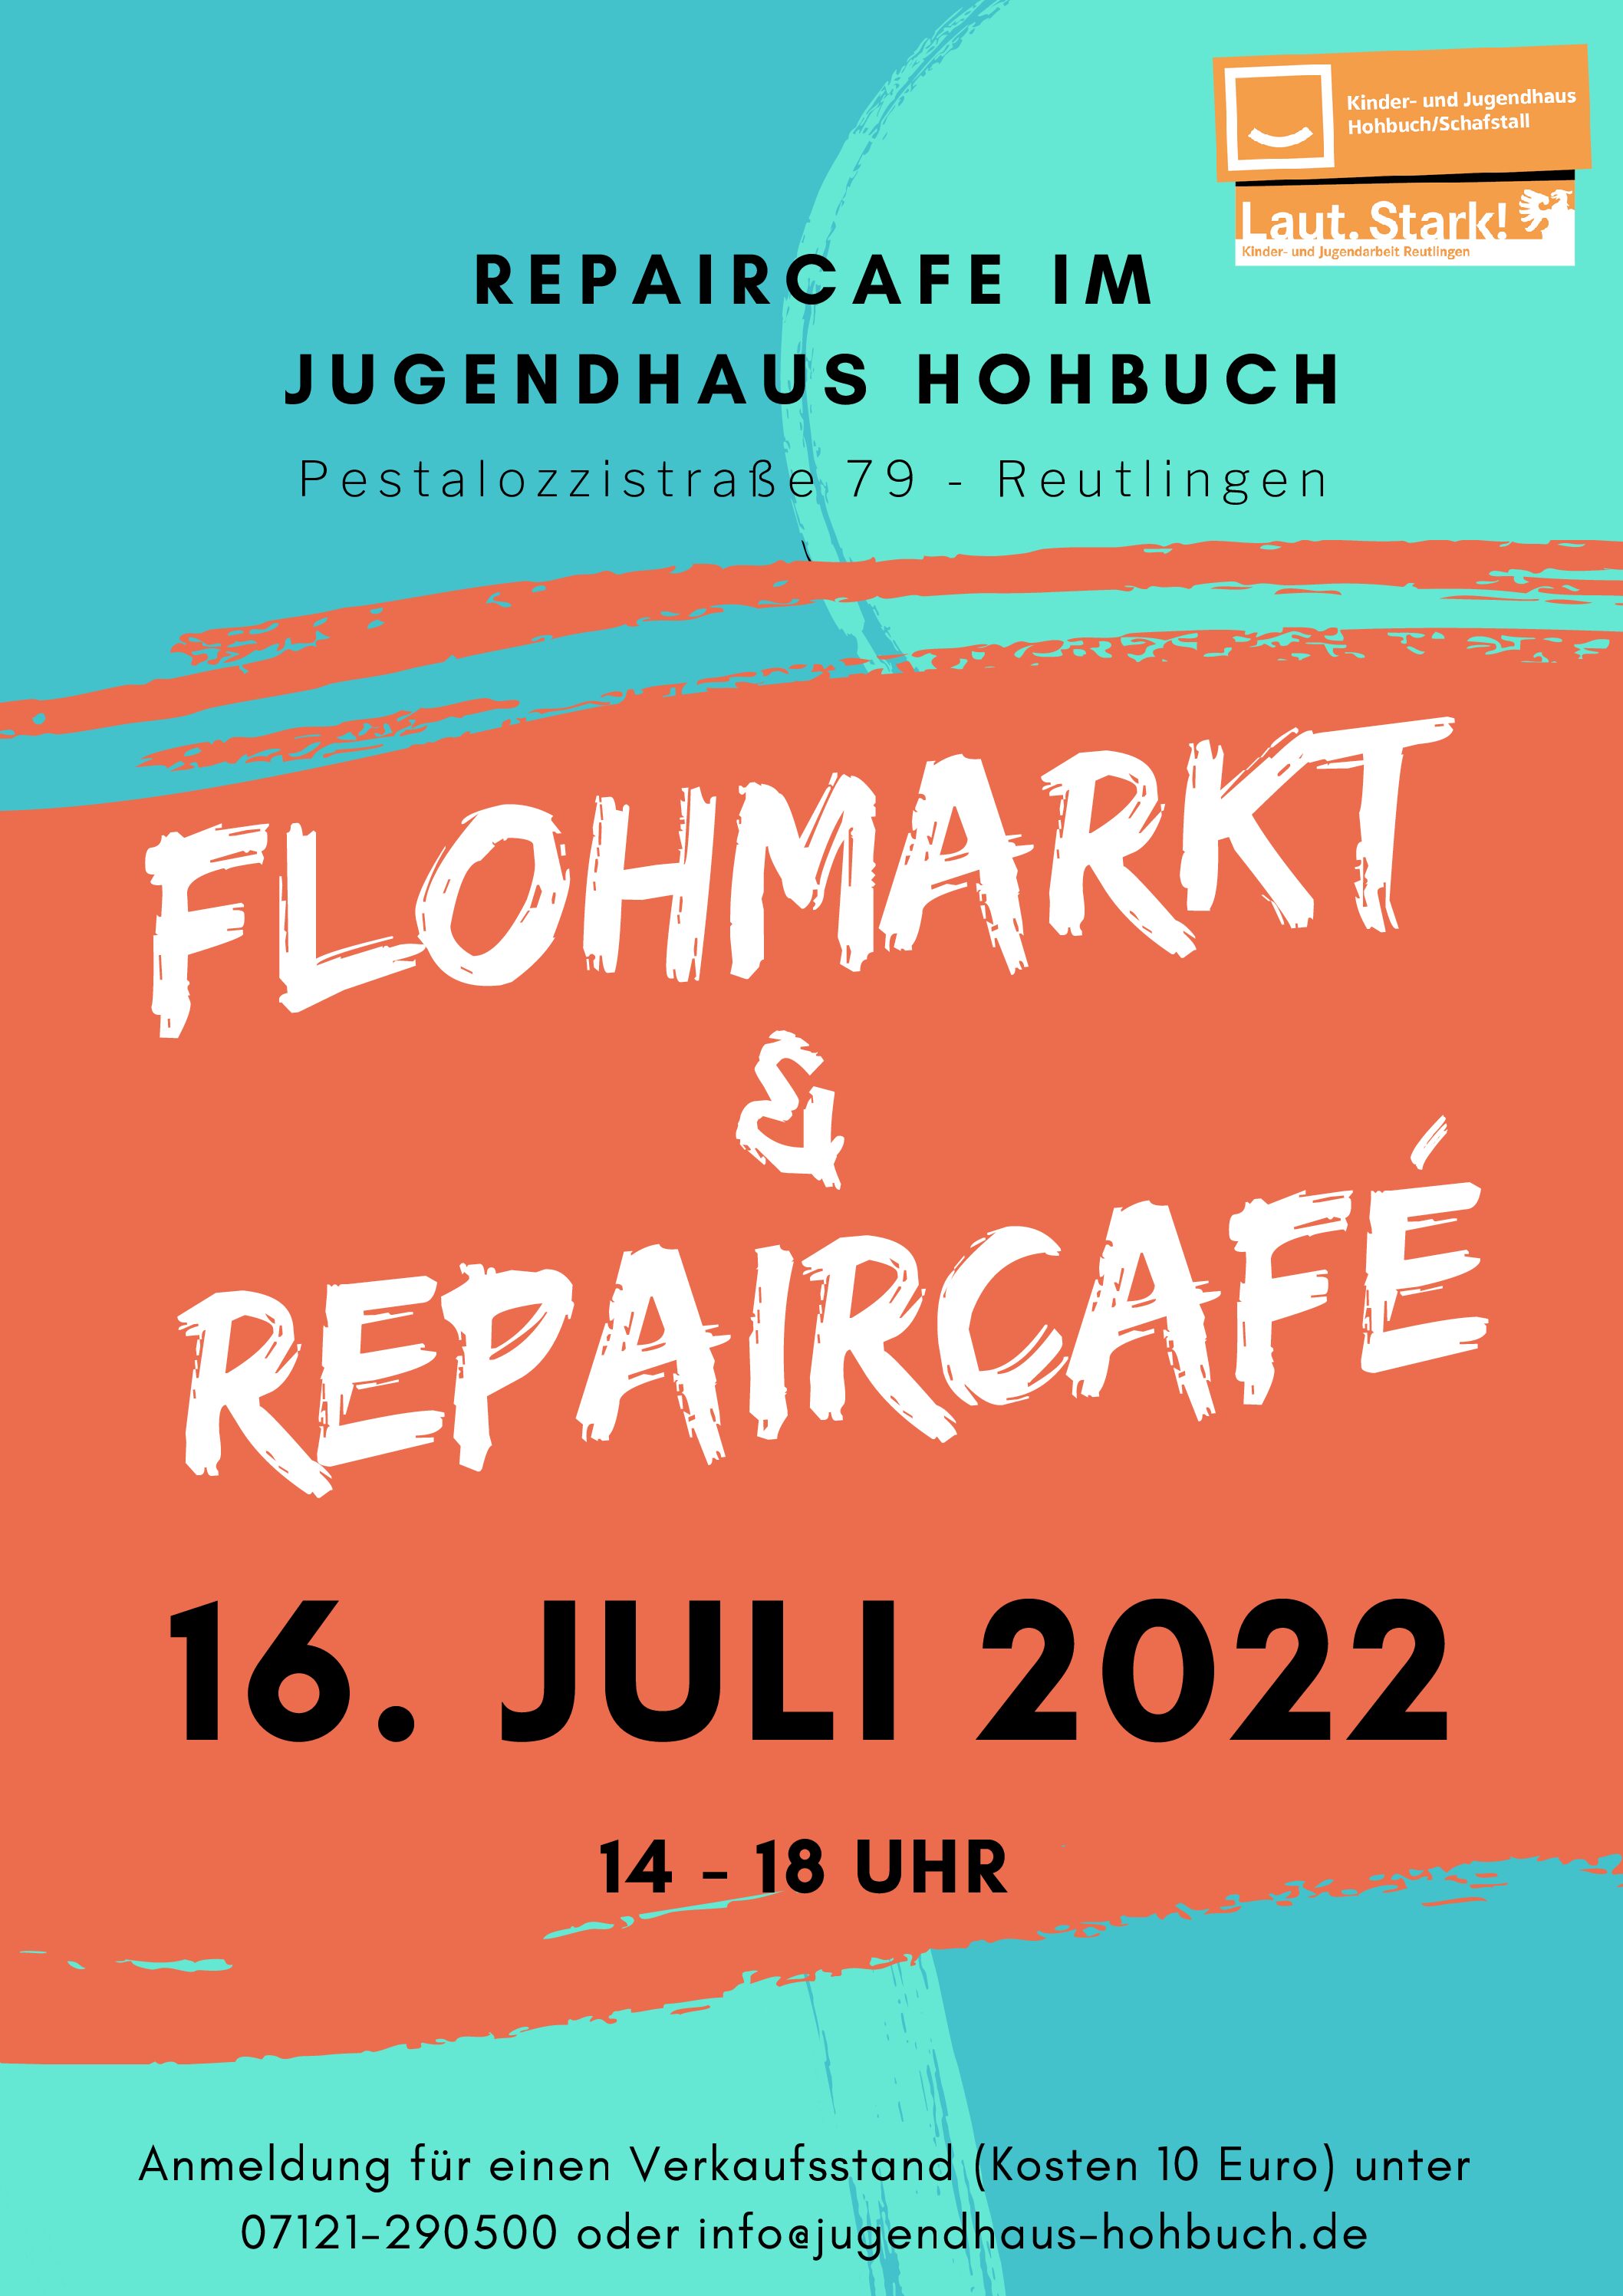 Repairmarkt: Flohmarkt & Repaicafé